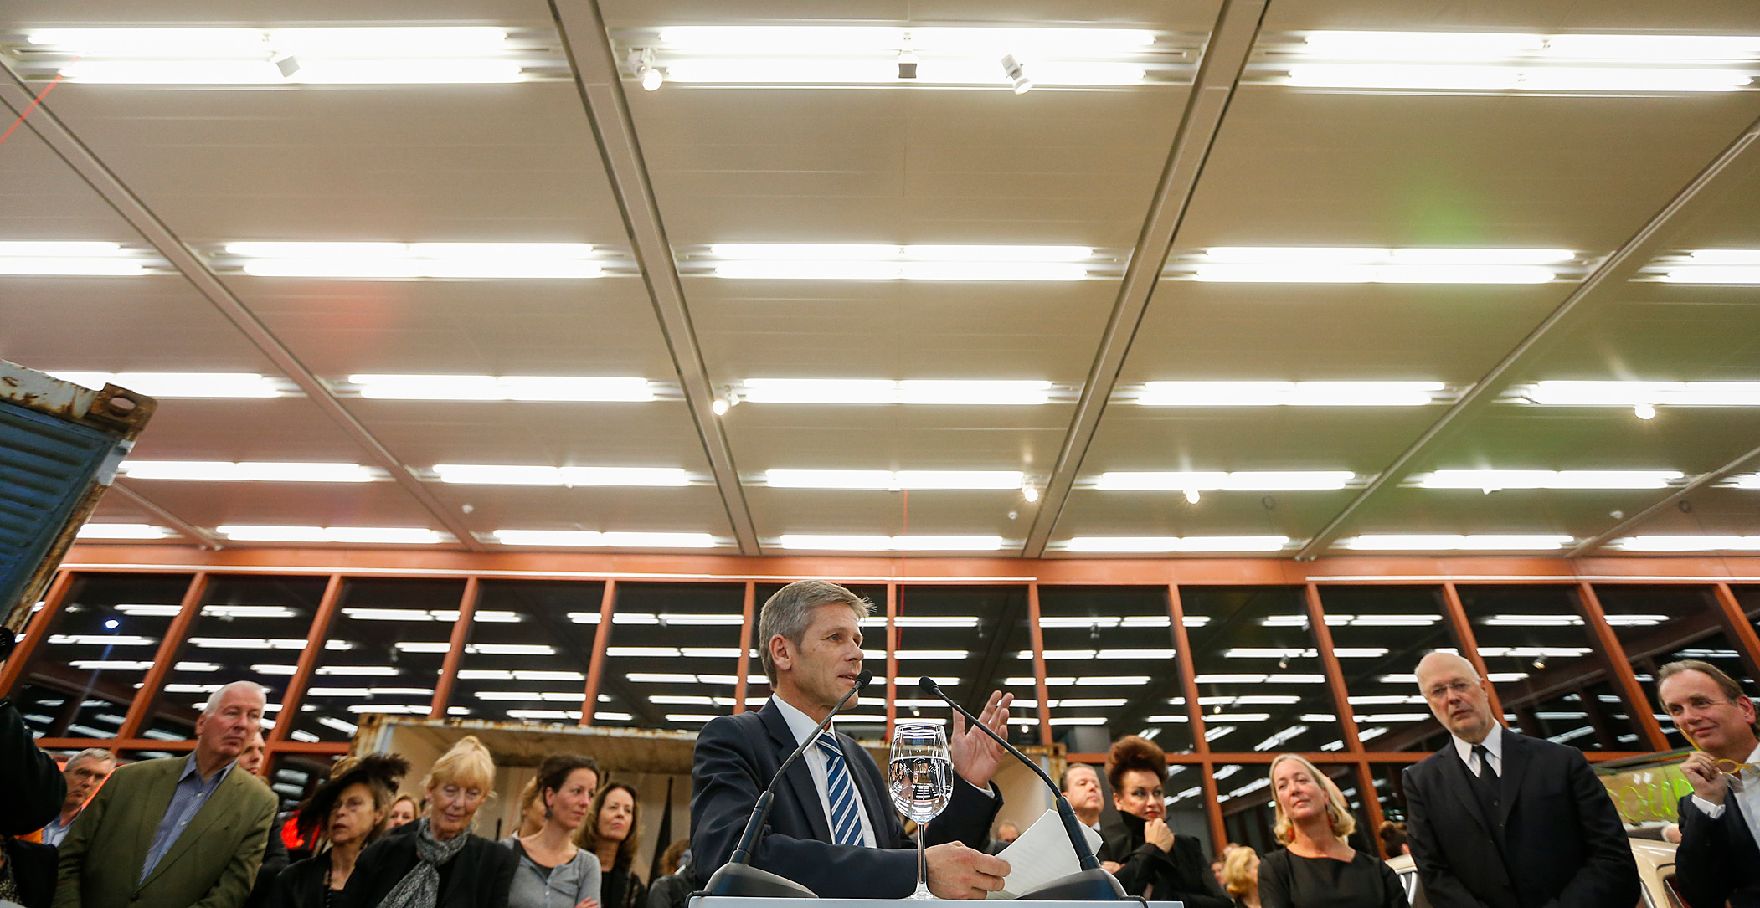 Am 16. Oktober 2014 eröffnete Kunst- und Kulturminister Josef Ostermayer (im Bild) die Ausstellung "Peter Weibel Medienrebell".